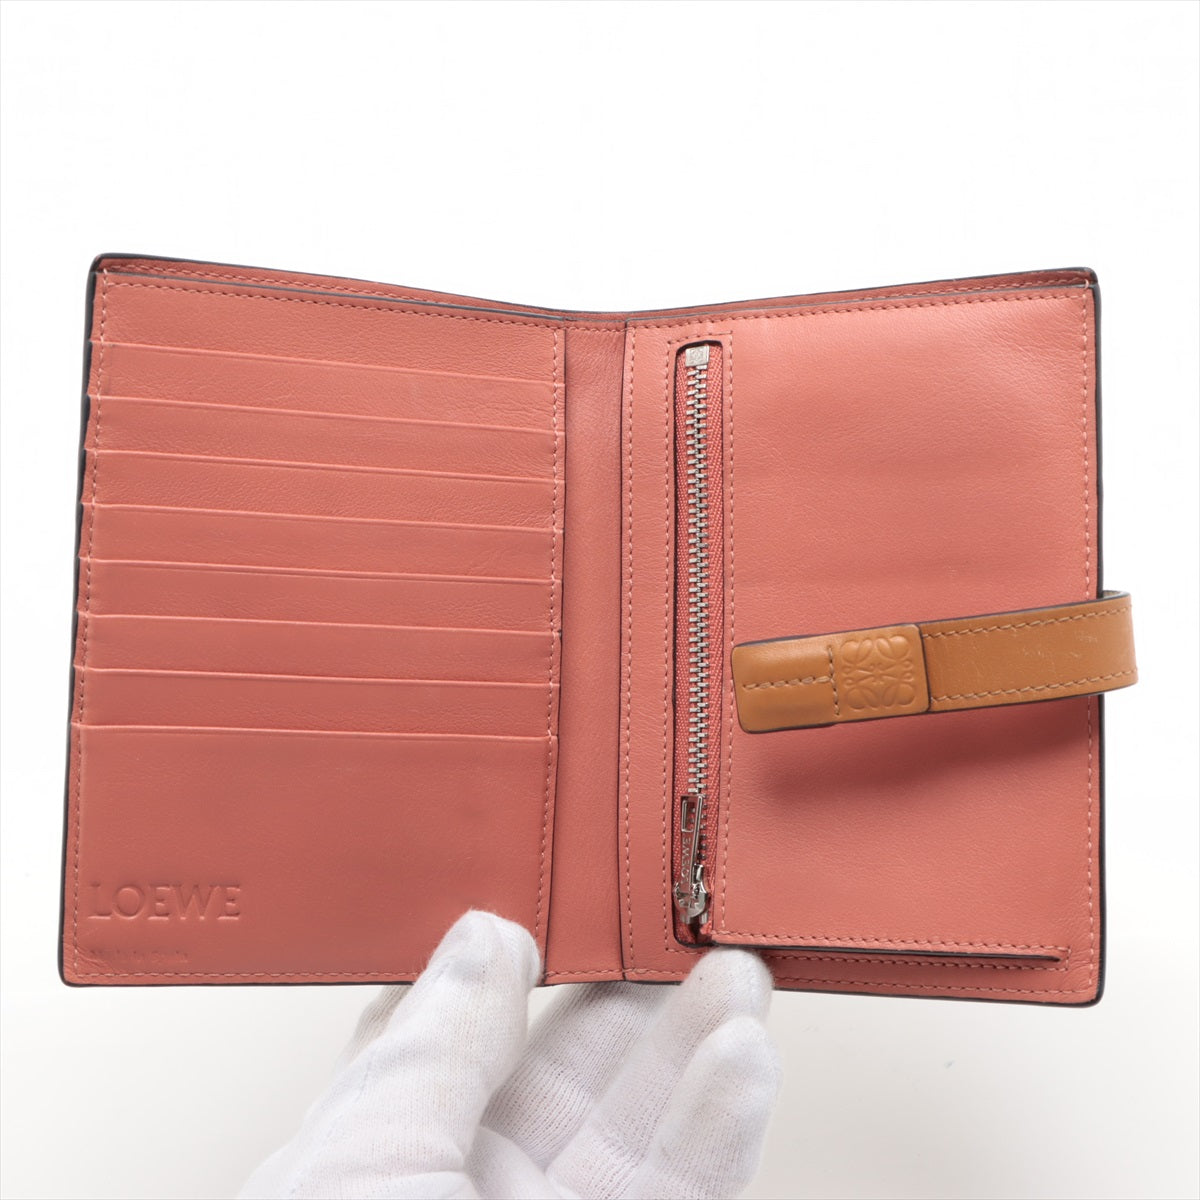 Loewe Medium Vertical Wallet Leather Compact Wallet Beige